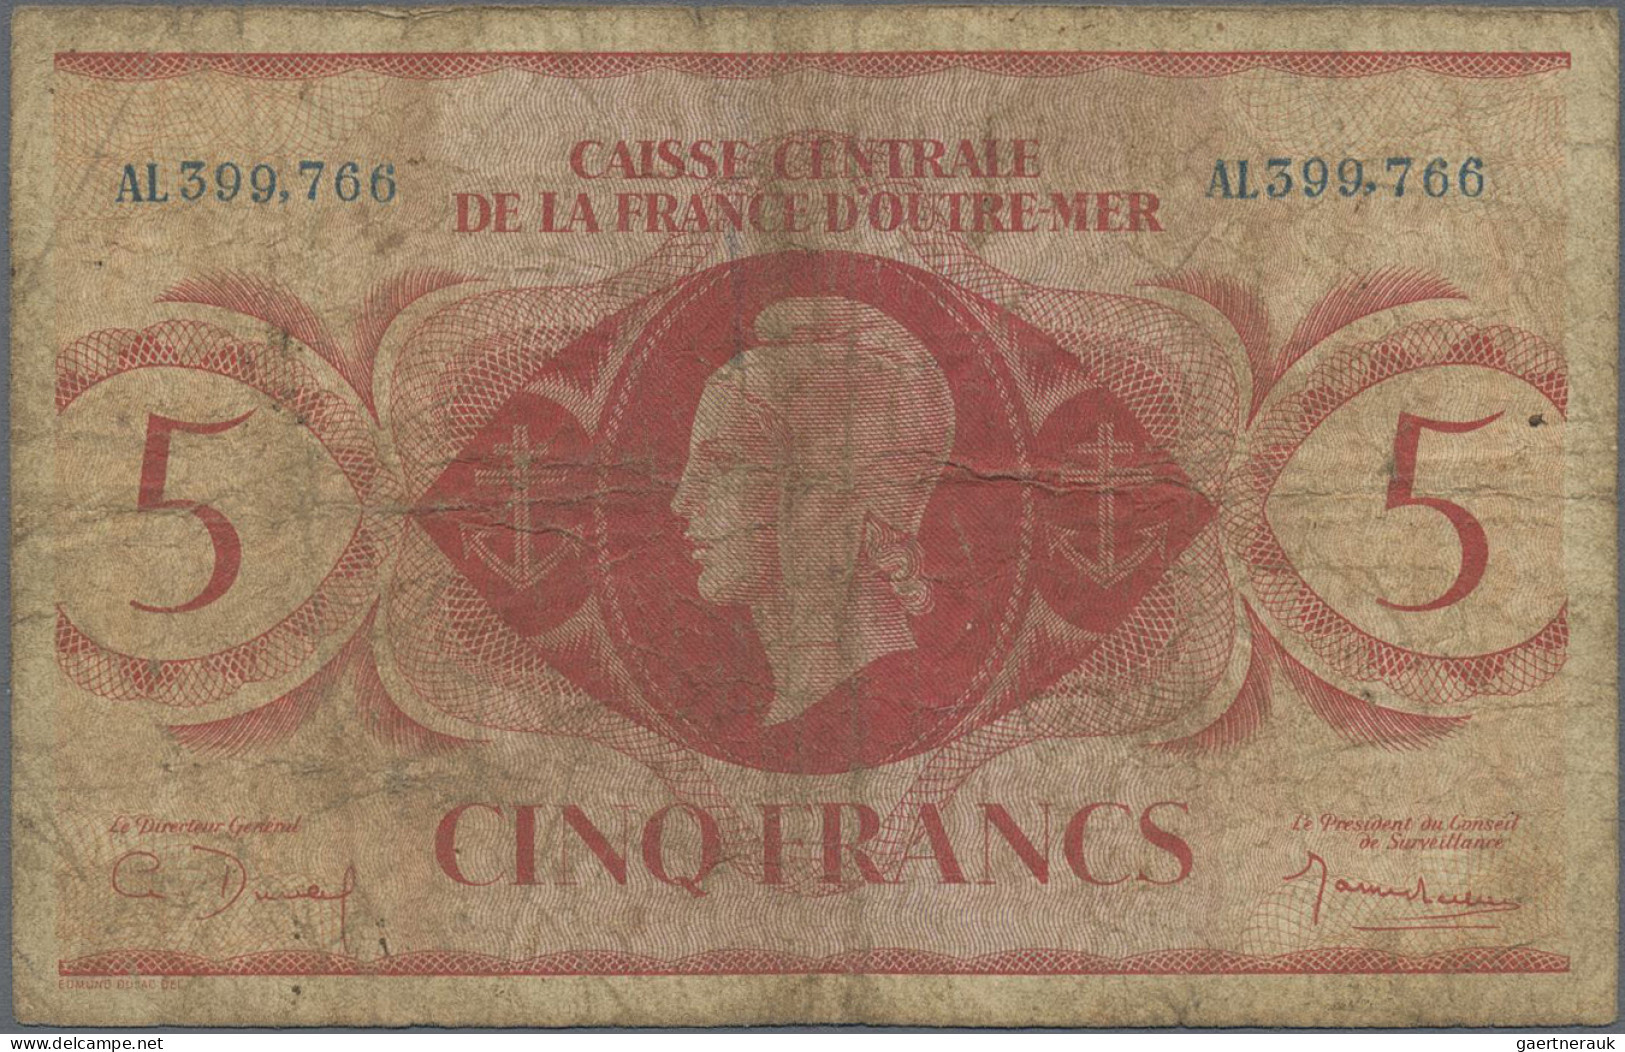 French Equatorial Africa: Caisse Centrale De La France D'Outre-Mer – FRENCH EQUA - Equatorial Guinea